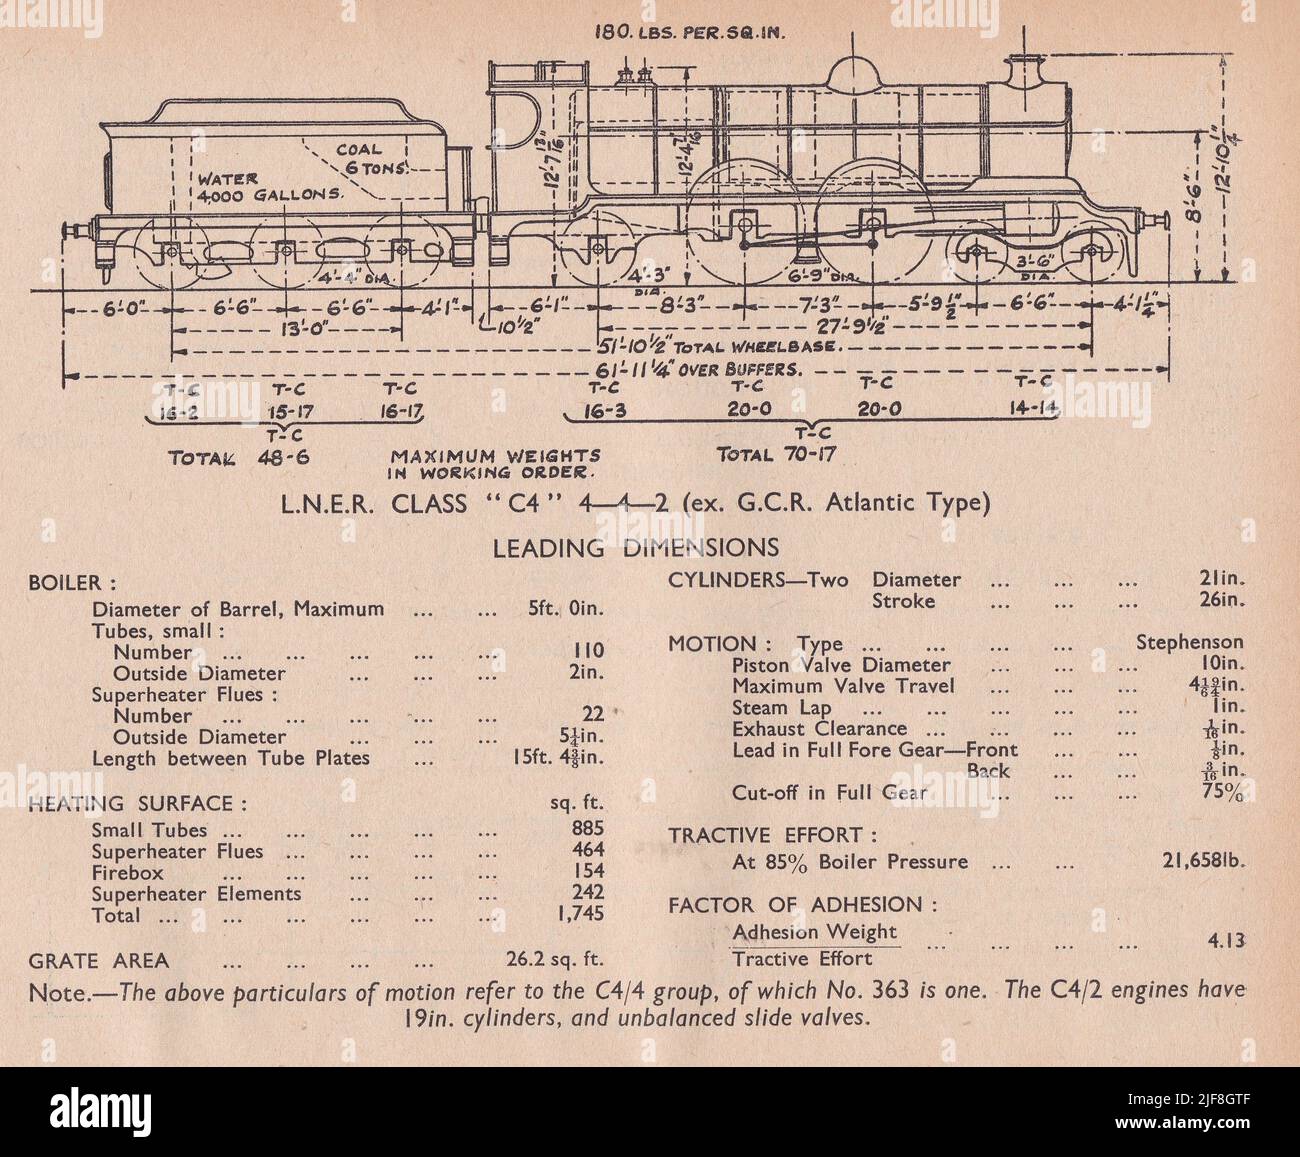 Vintage-Diagramm einer L.N.E.R. Klasse C4 4-4-2 (ex G.C.R. Atlantic Type) Führende Abmessungen. Stockfoto